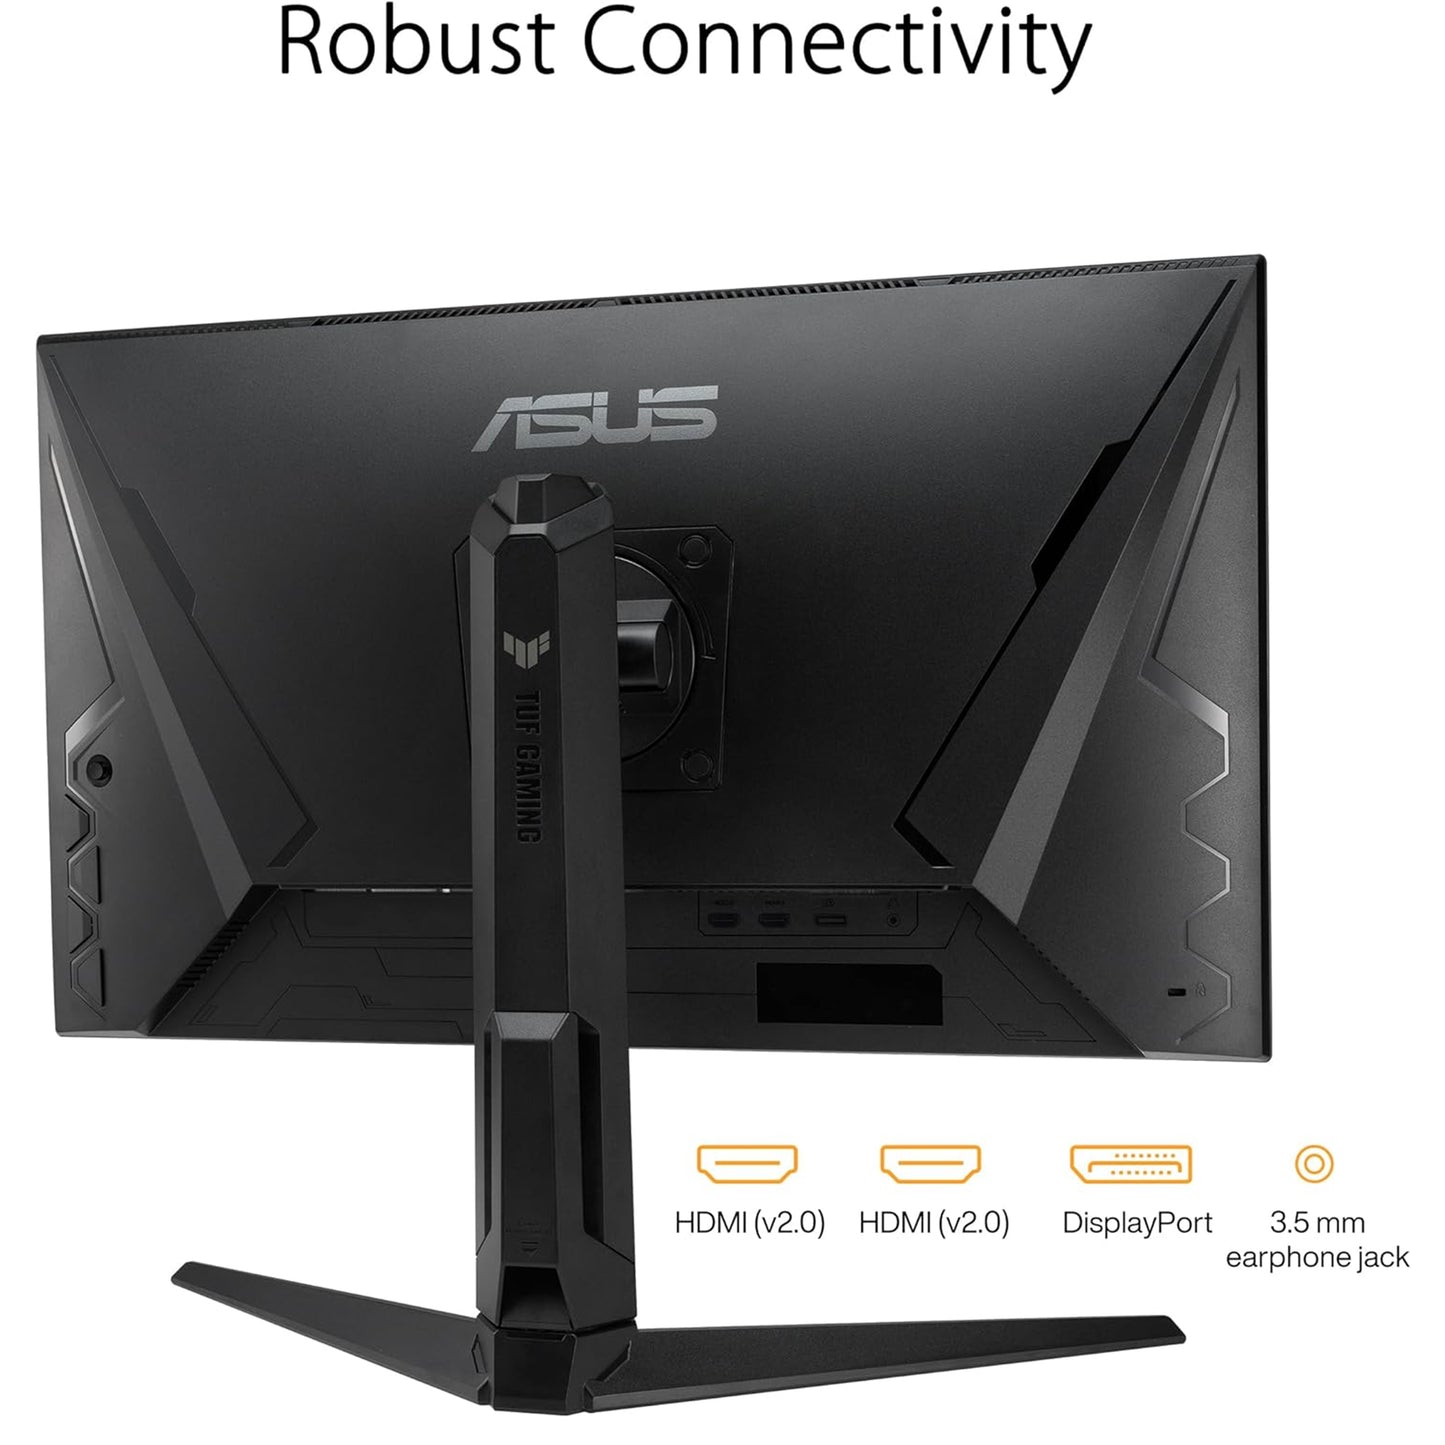 شاشة ASUS TUF Gaming مقاس 27 بوصة بدقة 1080 بكسل (VG279QL3A) - دقة عالية كاملة، 180 هرتز، 1 مللي ثانية، تقنية IPS سريعة، ضبابية حركة منخفضة للغاية، تقنية FreeSync Premium، متوافقة مع G-SYNC، مكبرات صوت، منفذ DisplayPort، ارتفاع قابل للتعديل